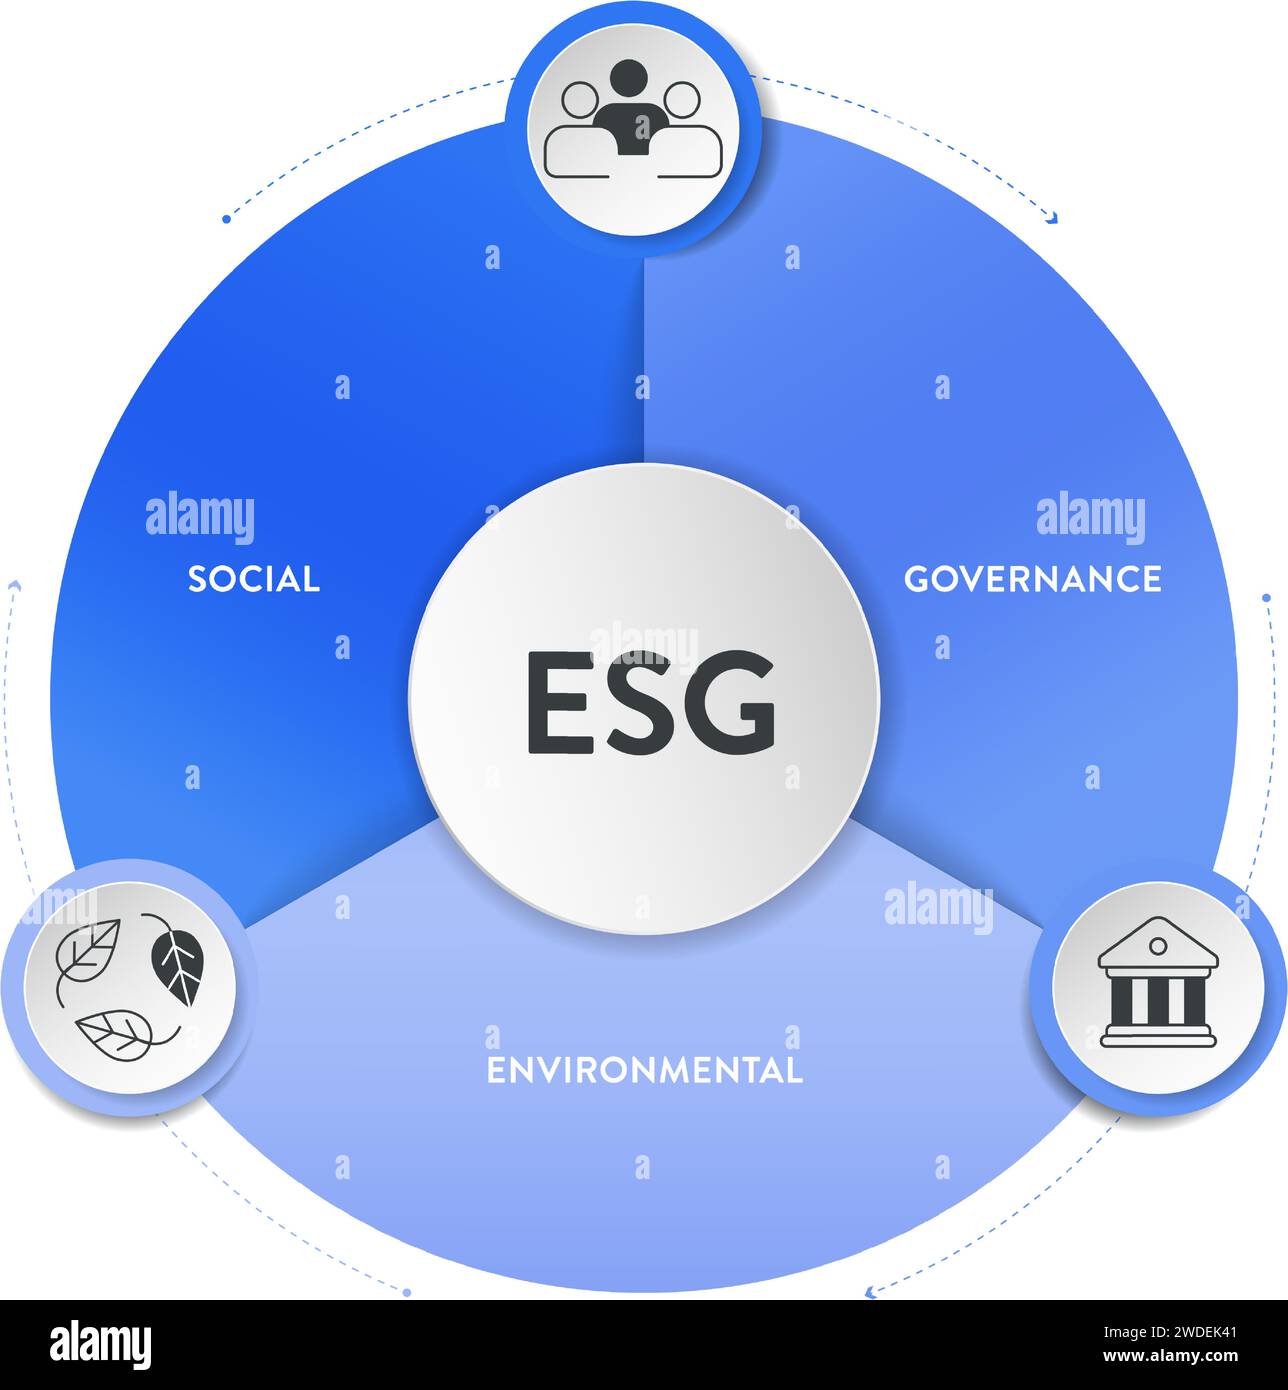 Modello di banner per l'illustrazione della strategia ESG ambientale, sociale e di governance con vettore di icone. Sostenibilità, etica e re aziendale Illustrazione Vettoriale